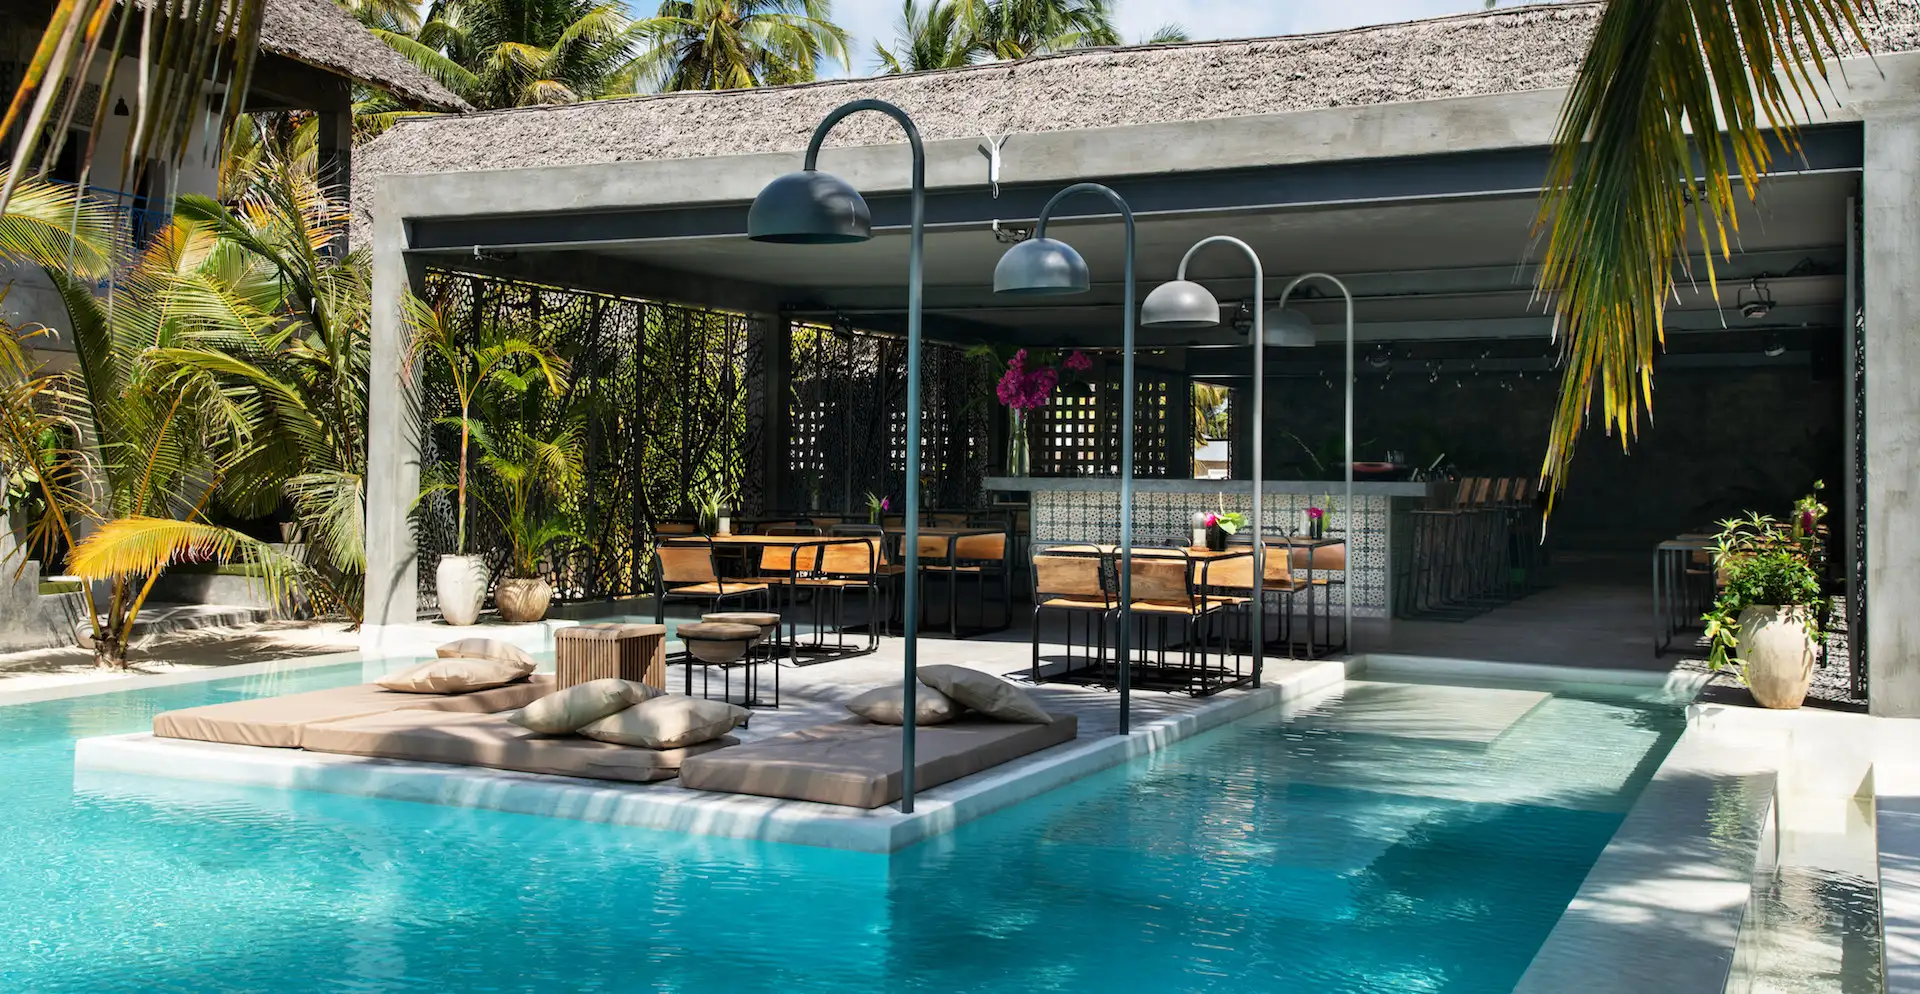 Casa Beach Hotel Zanzibar restaurant, bar, lounge area and pool